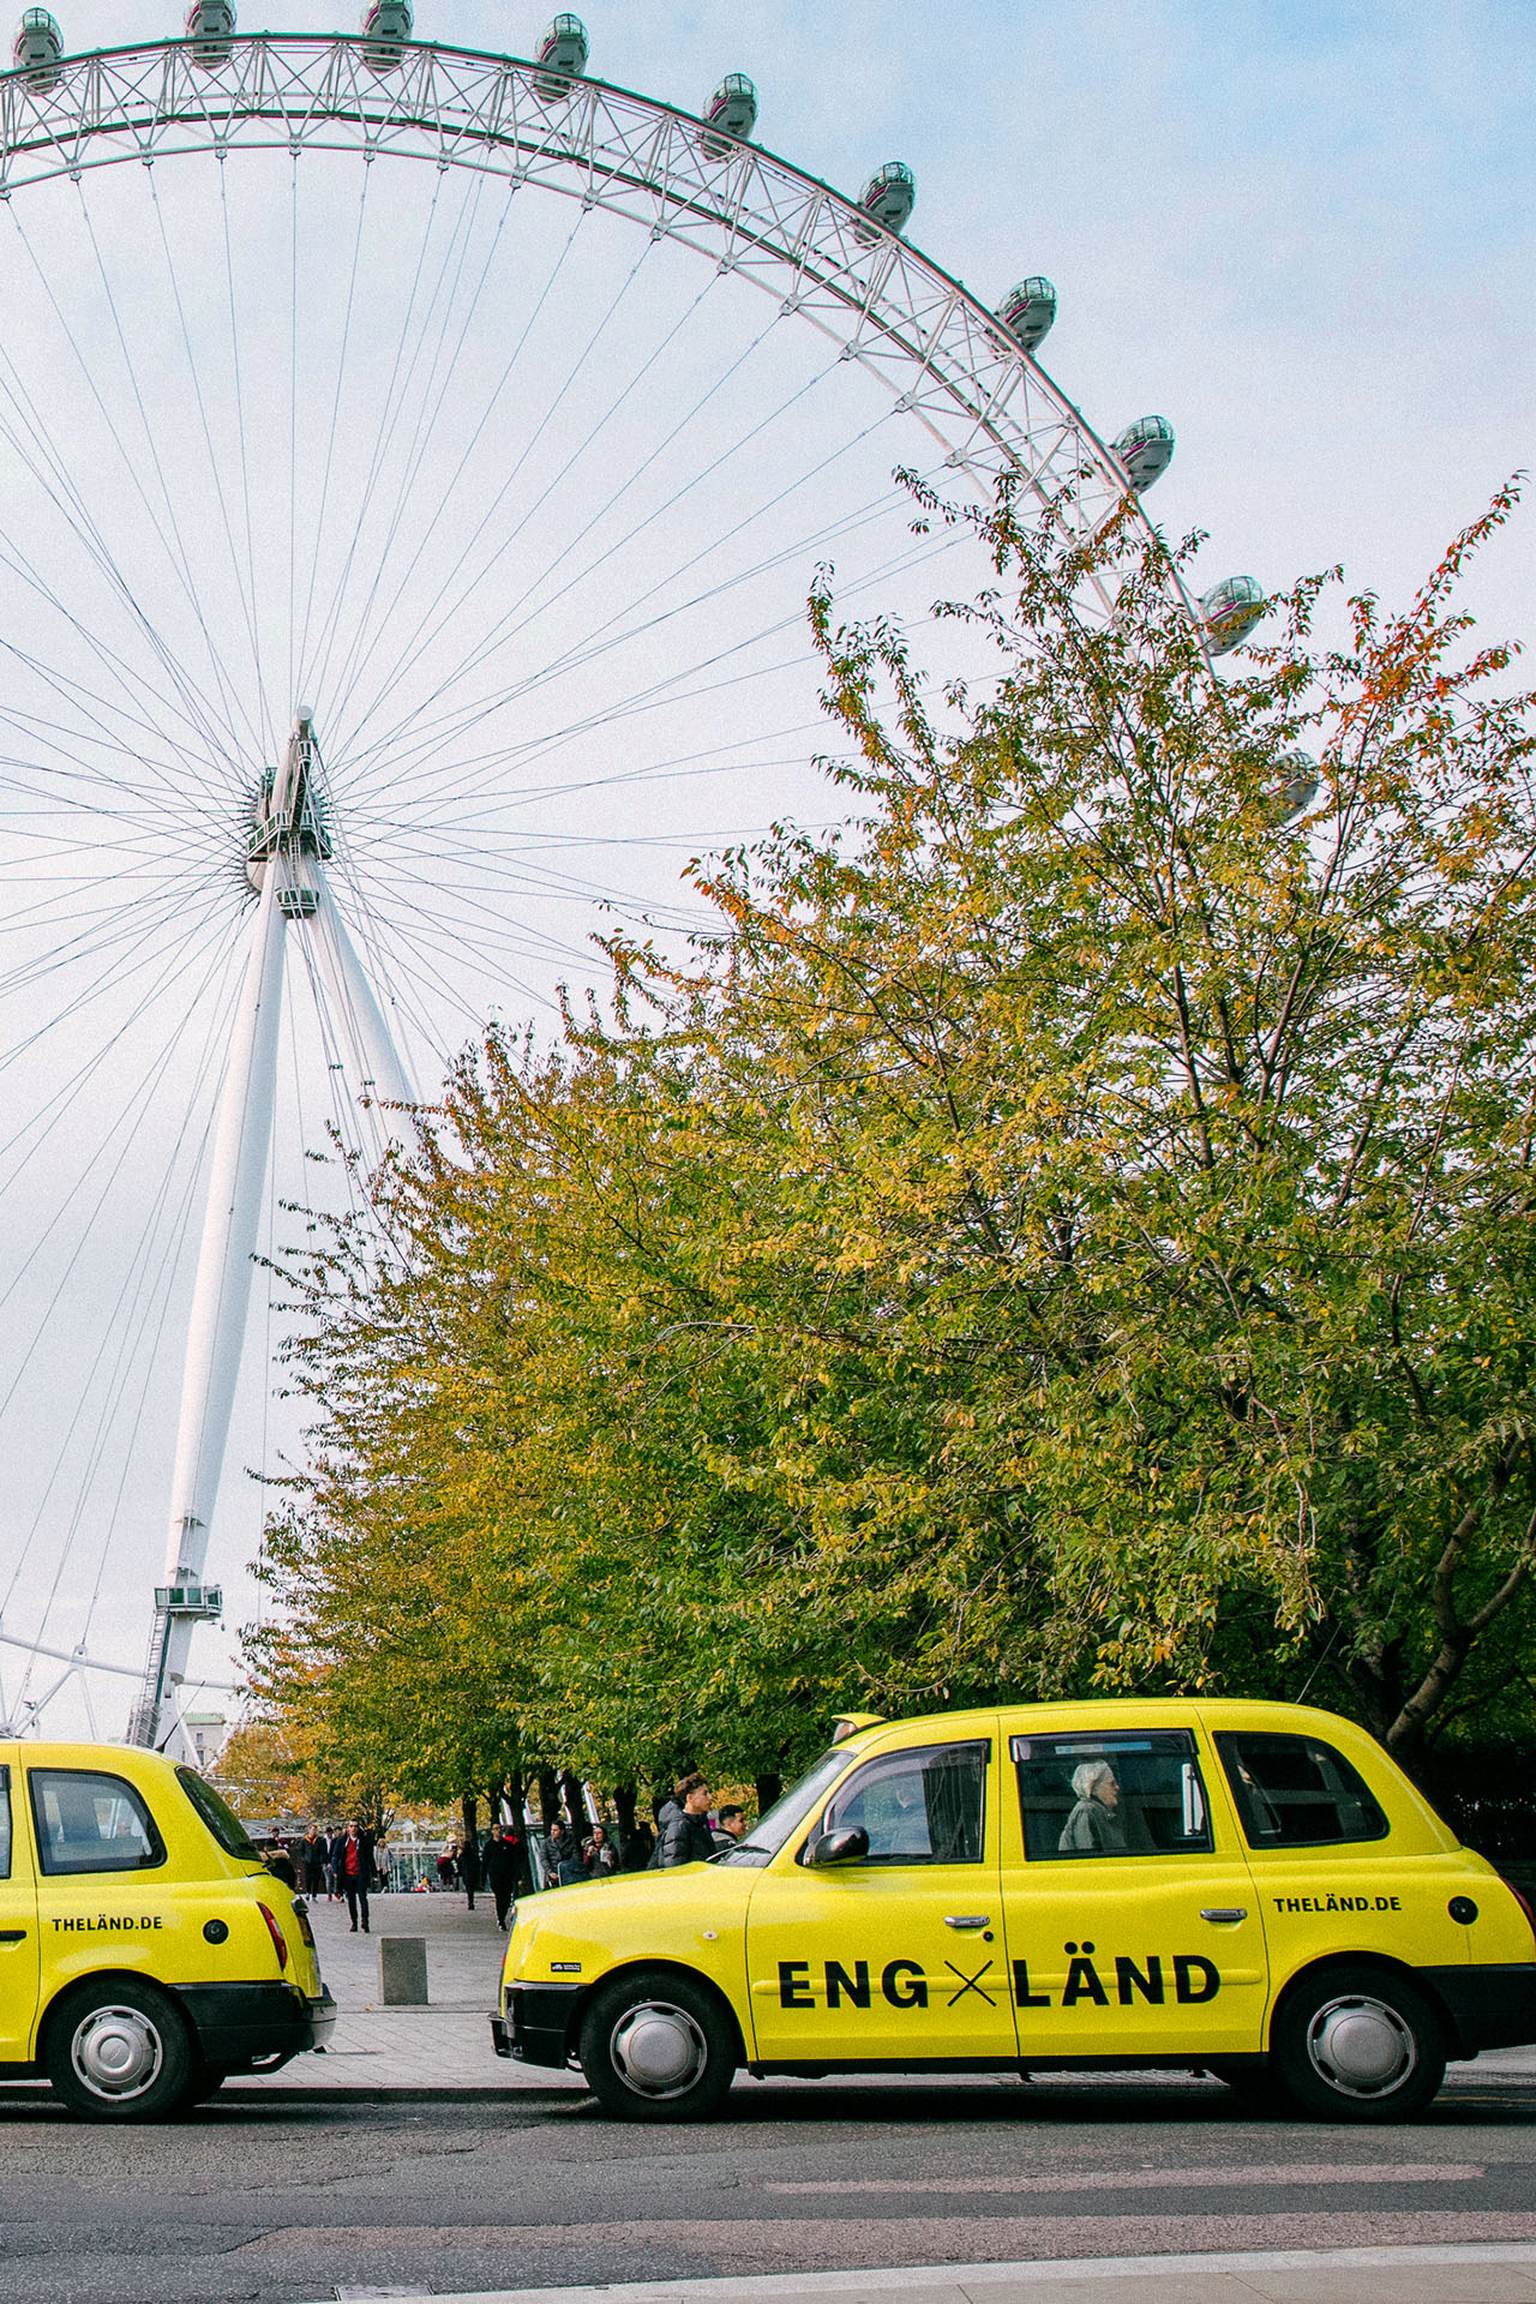 Neongelbe Taxis mit "LÄND" Schriftzügen stehen vor einem Riesenrad in England